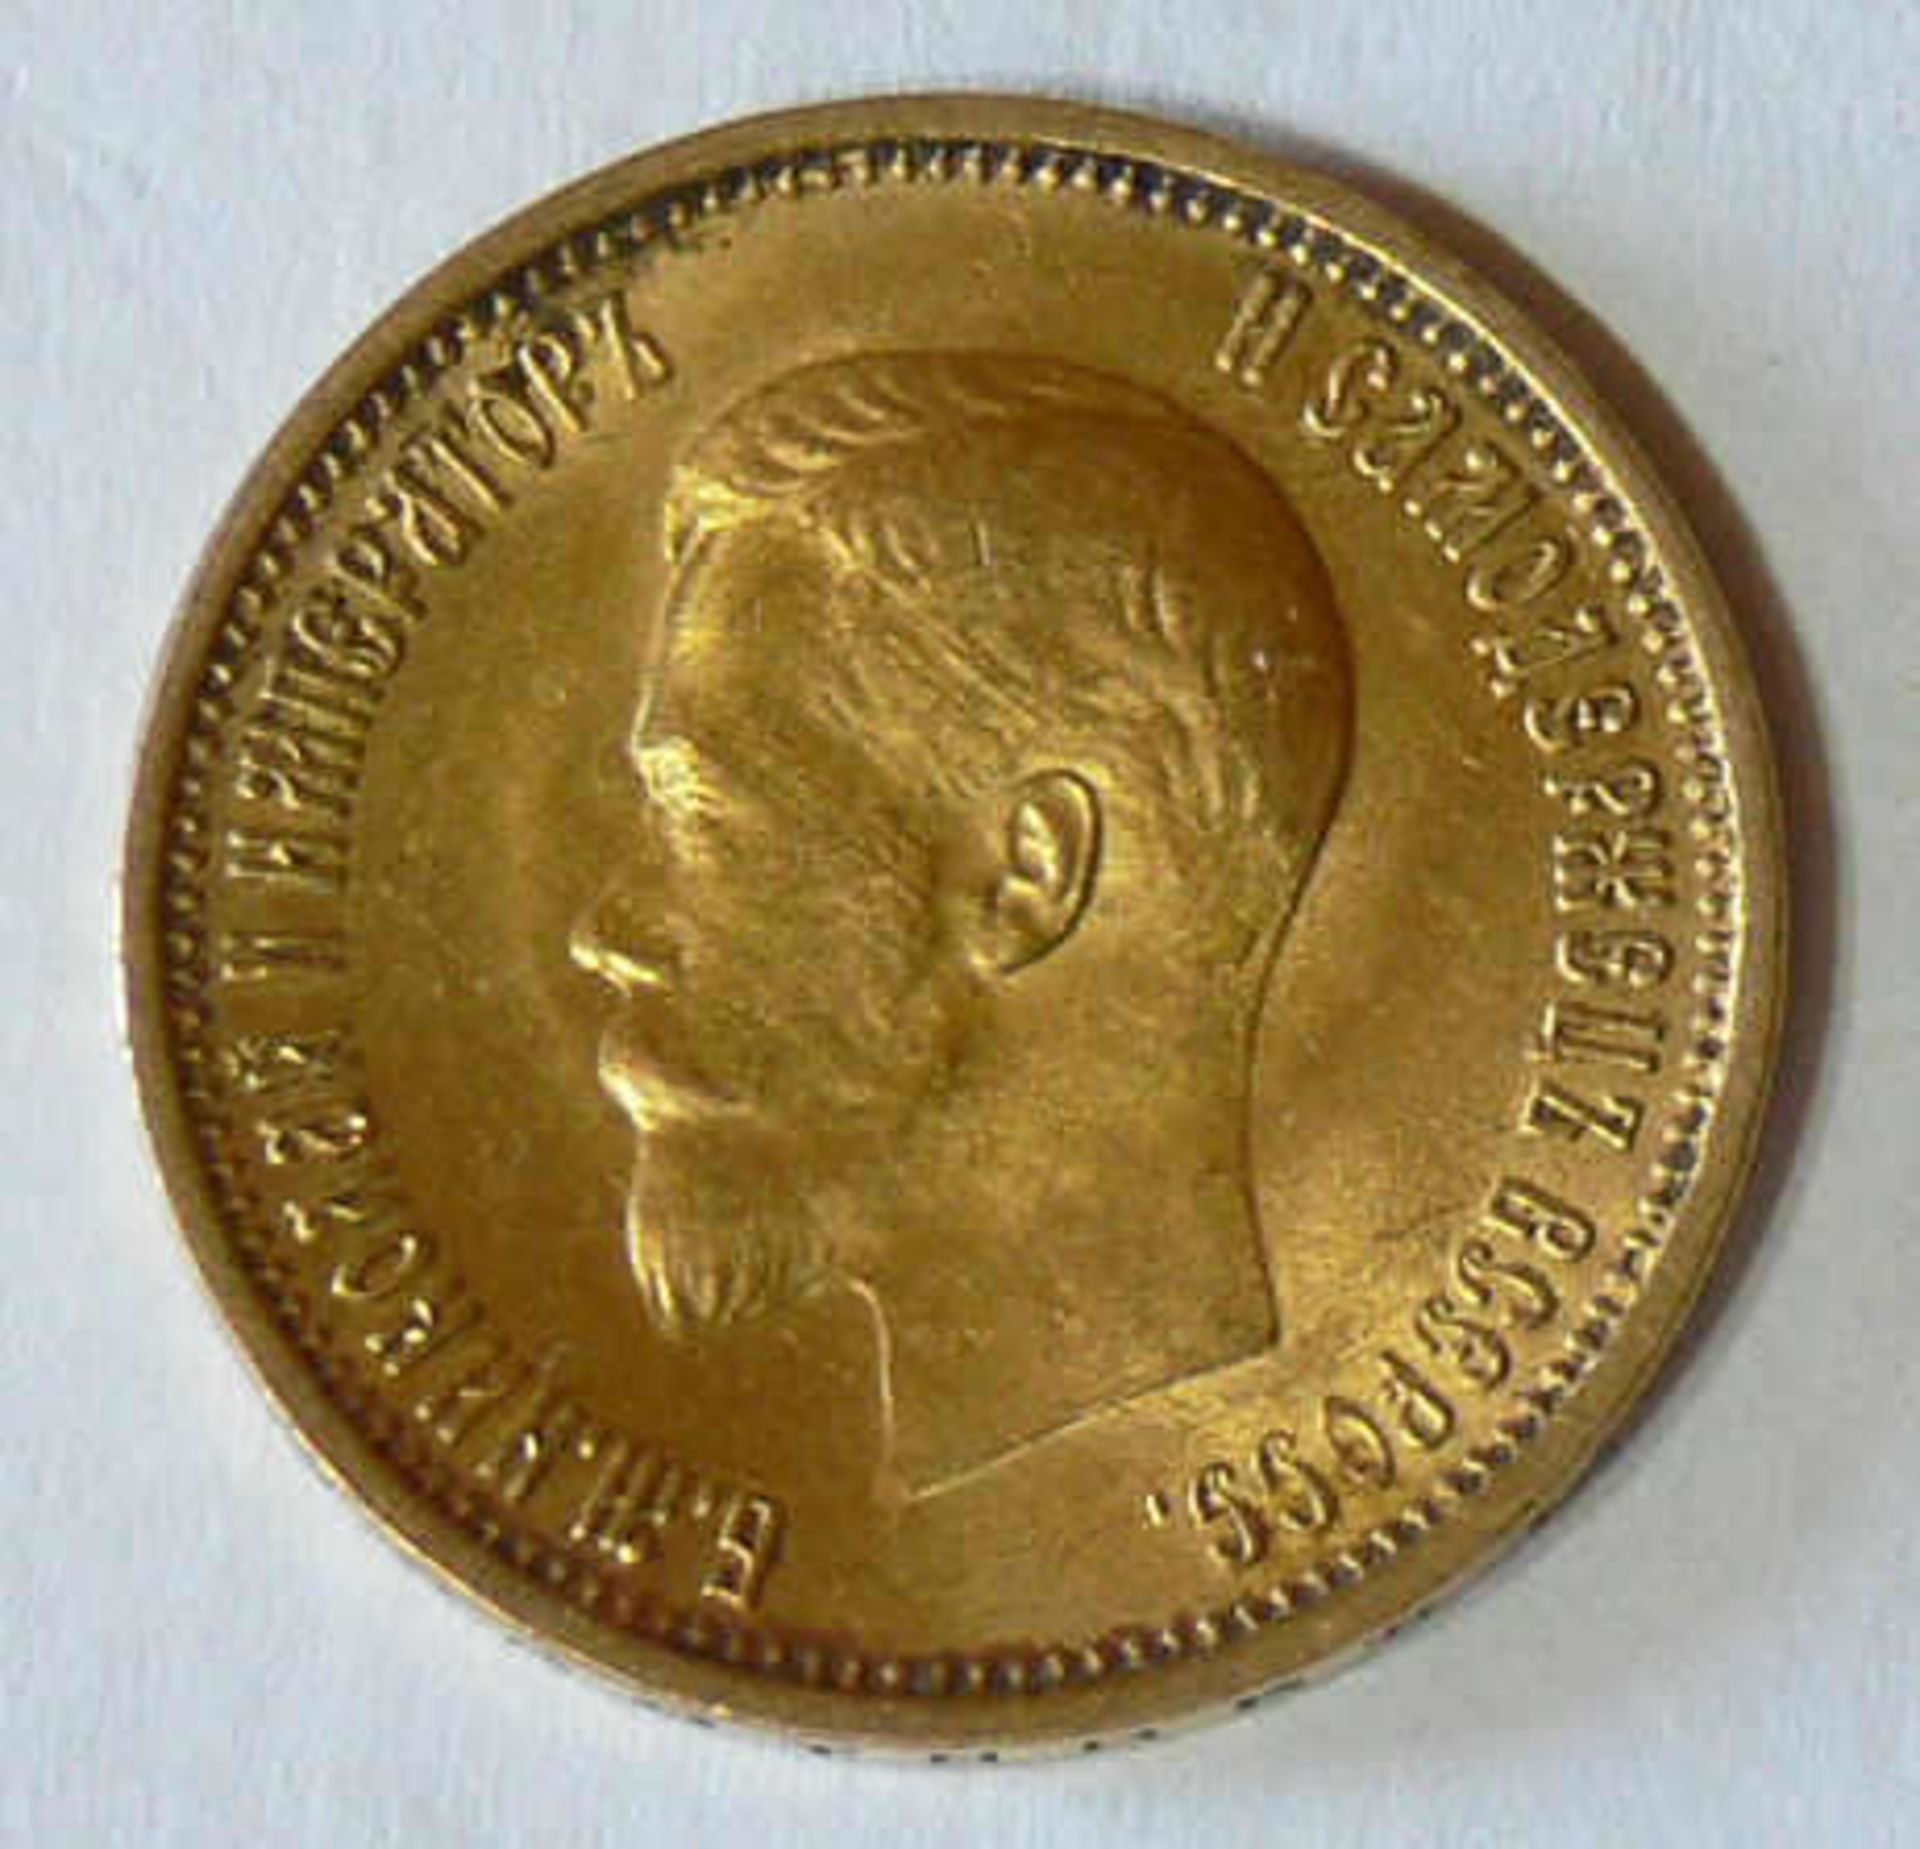 Russland 1899, 10.- Rubel - Goldmünze. Zar Nikolaus II. Gewicht: ca. 8.6 g. Gold 900. Feingewicht: - Bild 2 aus 2